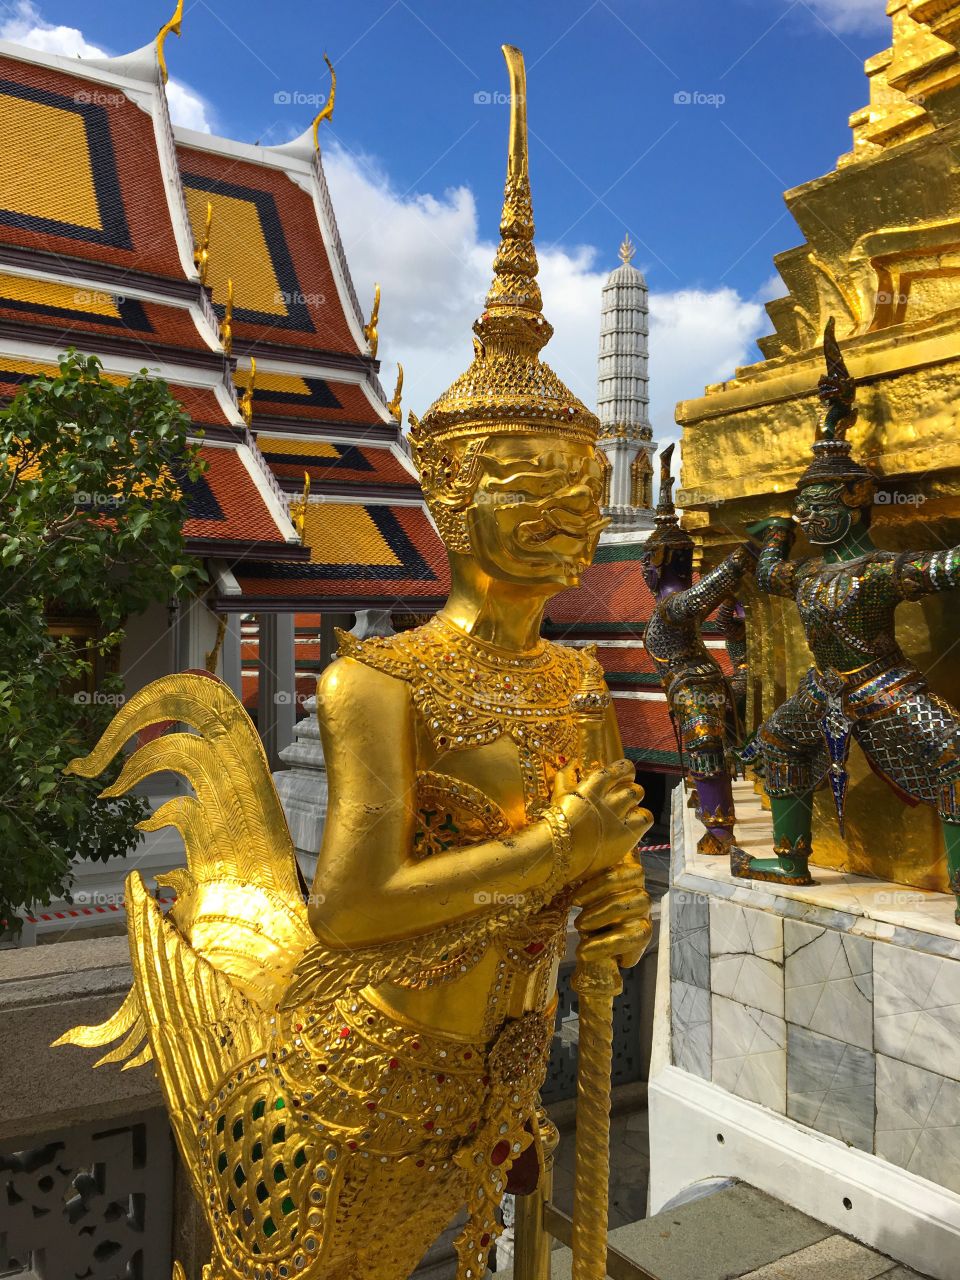 Grand Palace / Bangkok Thailand 42